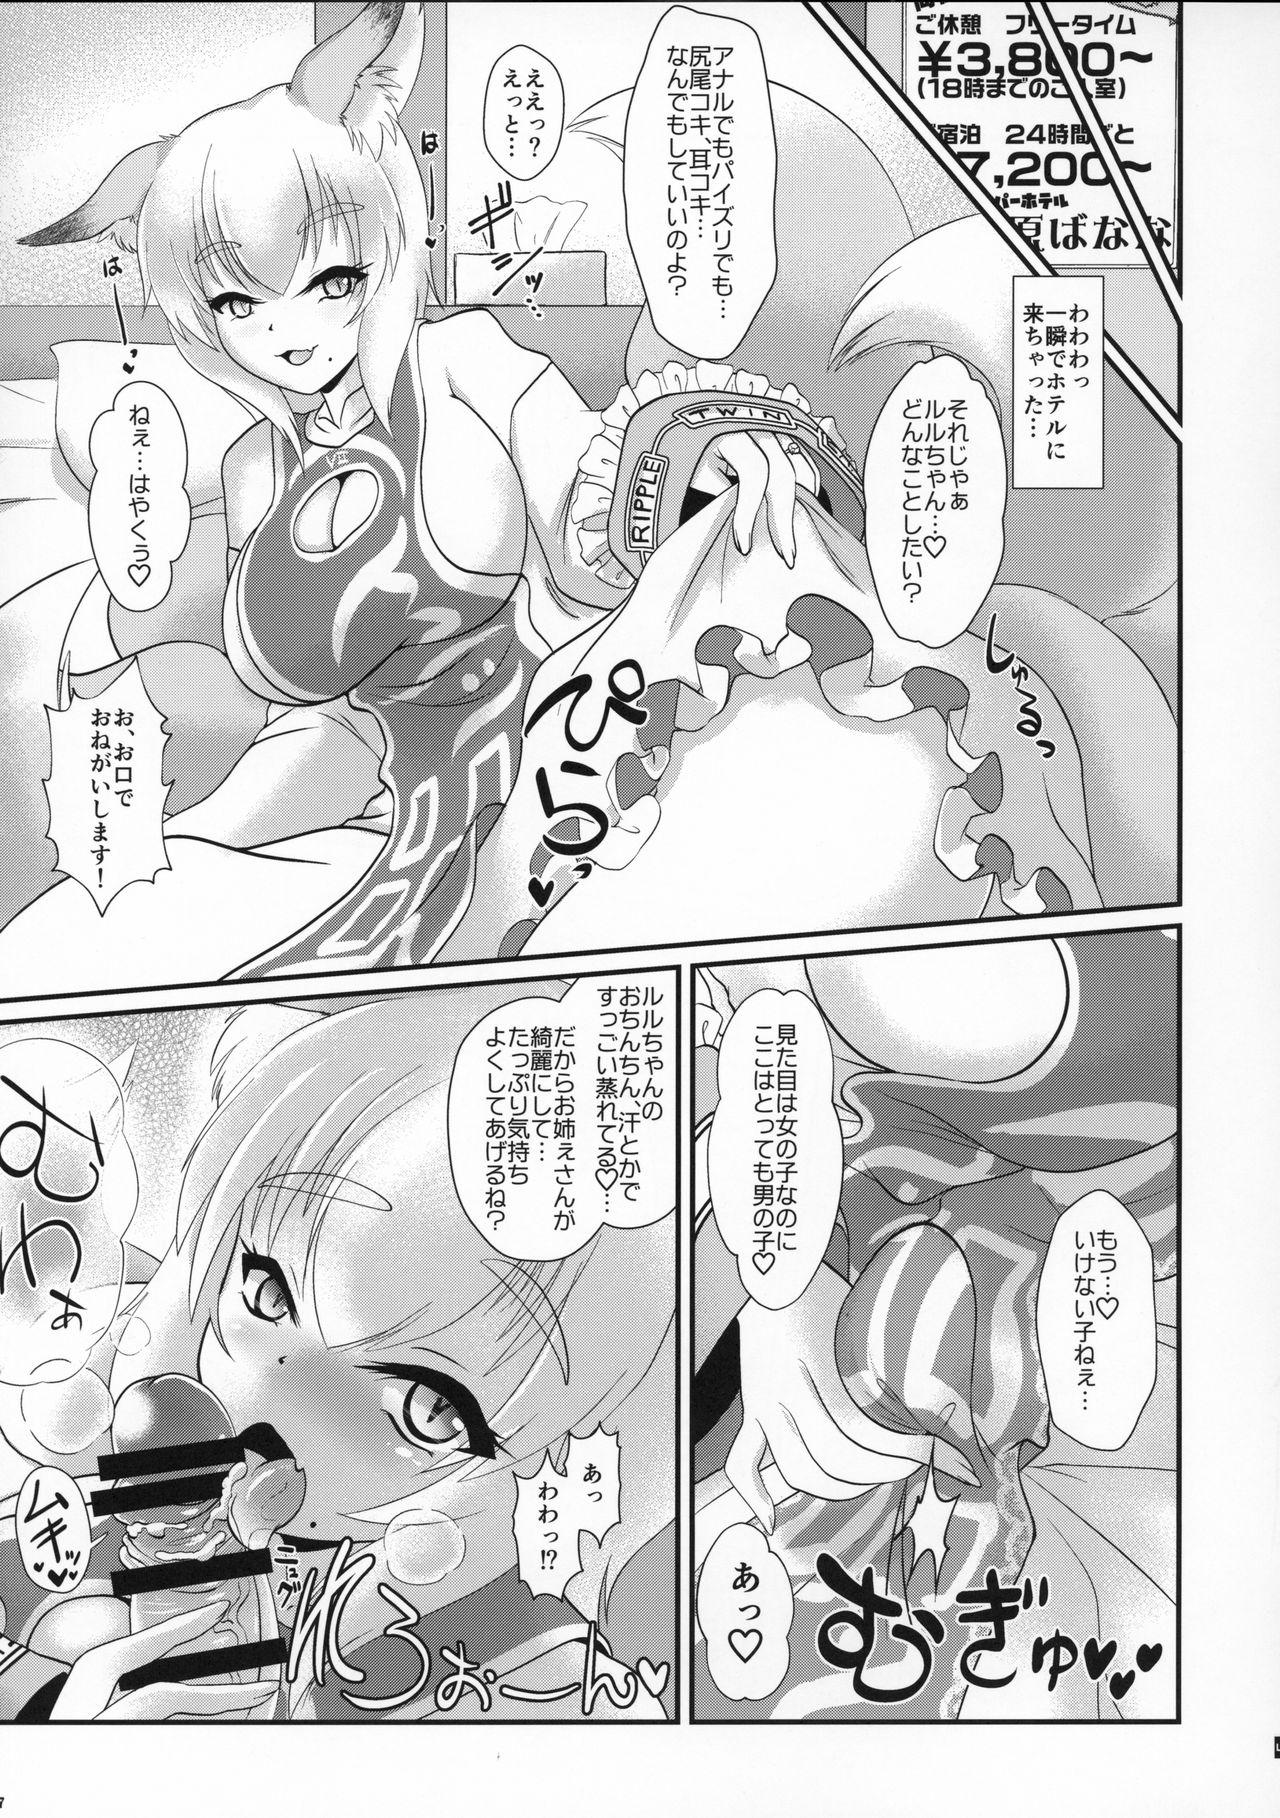 Baile Natsu no Touhou Manga Matsuri Great Yakumo Ran VS Ran-sama CJD - Touhou project Pattaya - Page 6